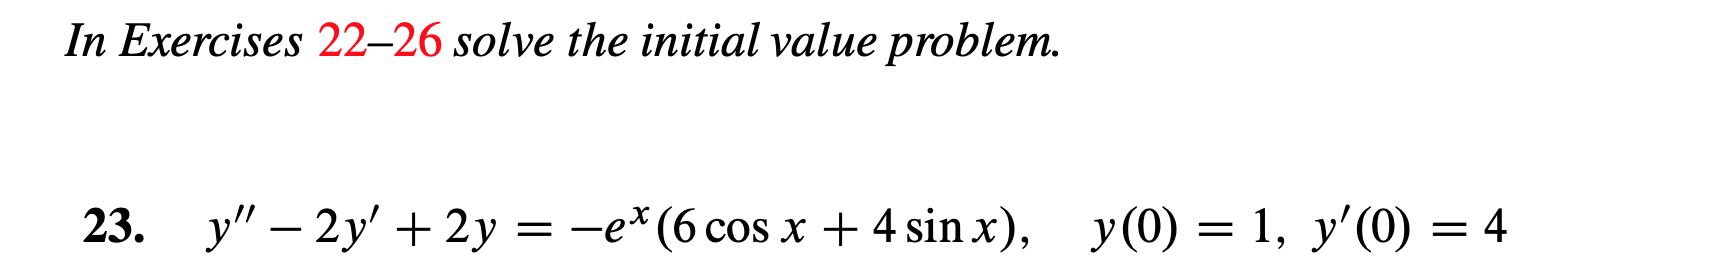 In Exercises 22-26 solve the initial value problem.
=-ex(6 cos x
4 sin x),
y(0) 1, y'(0)= 4
y"-2y' 2y
23.
